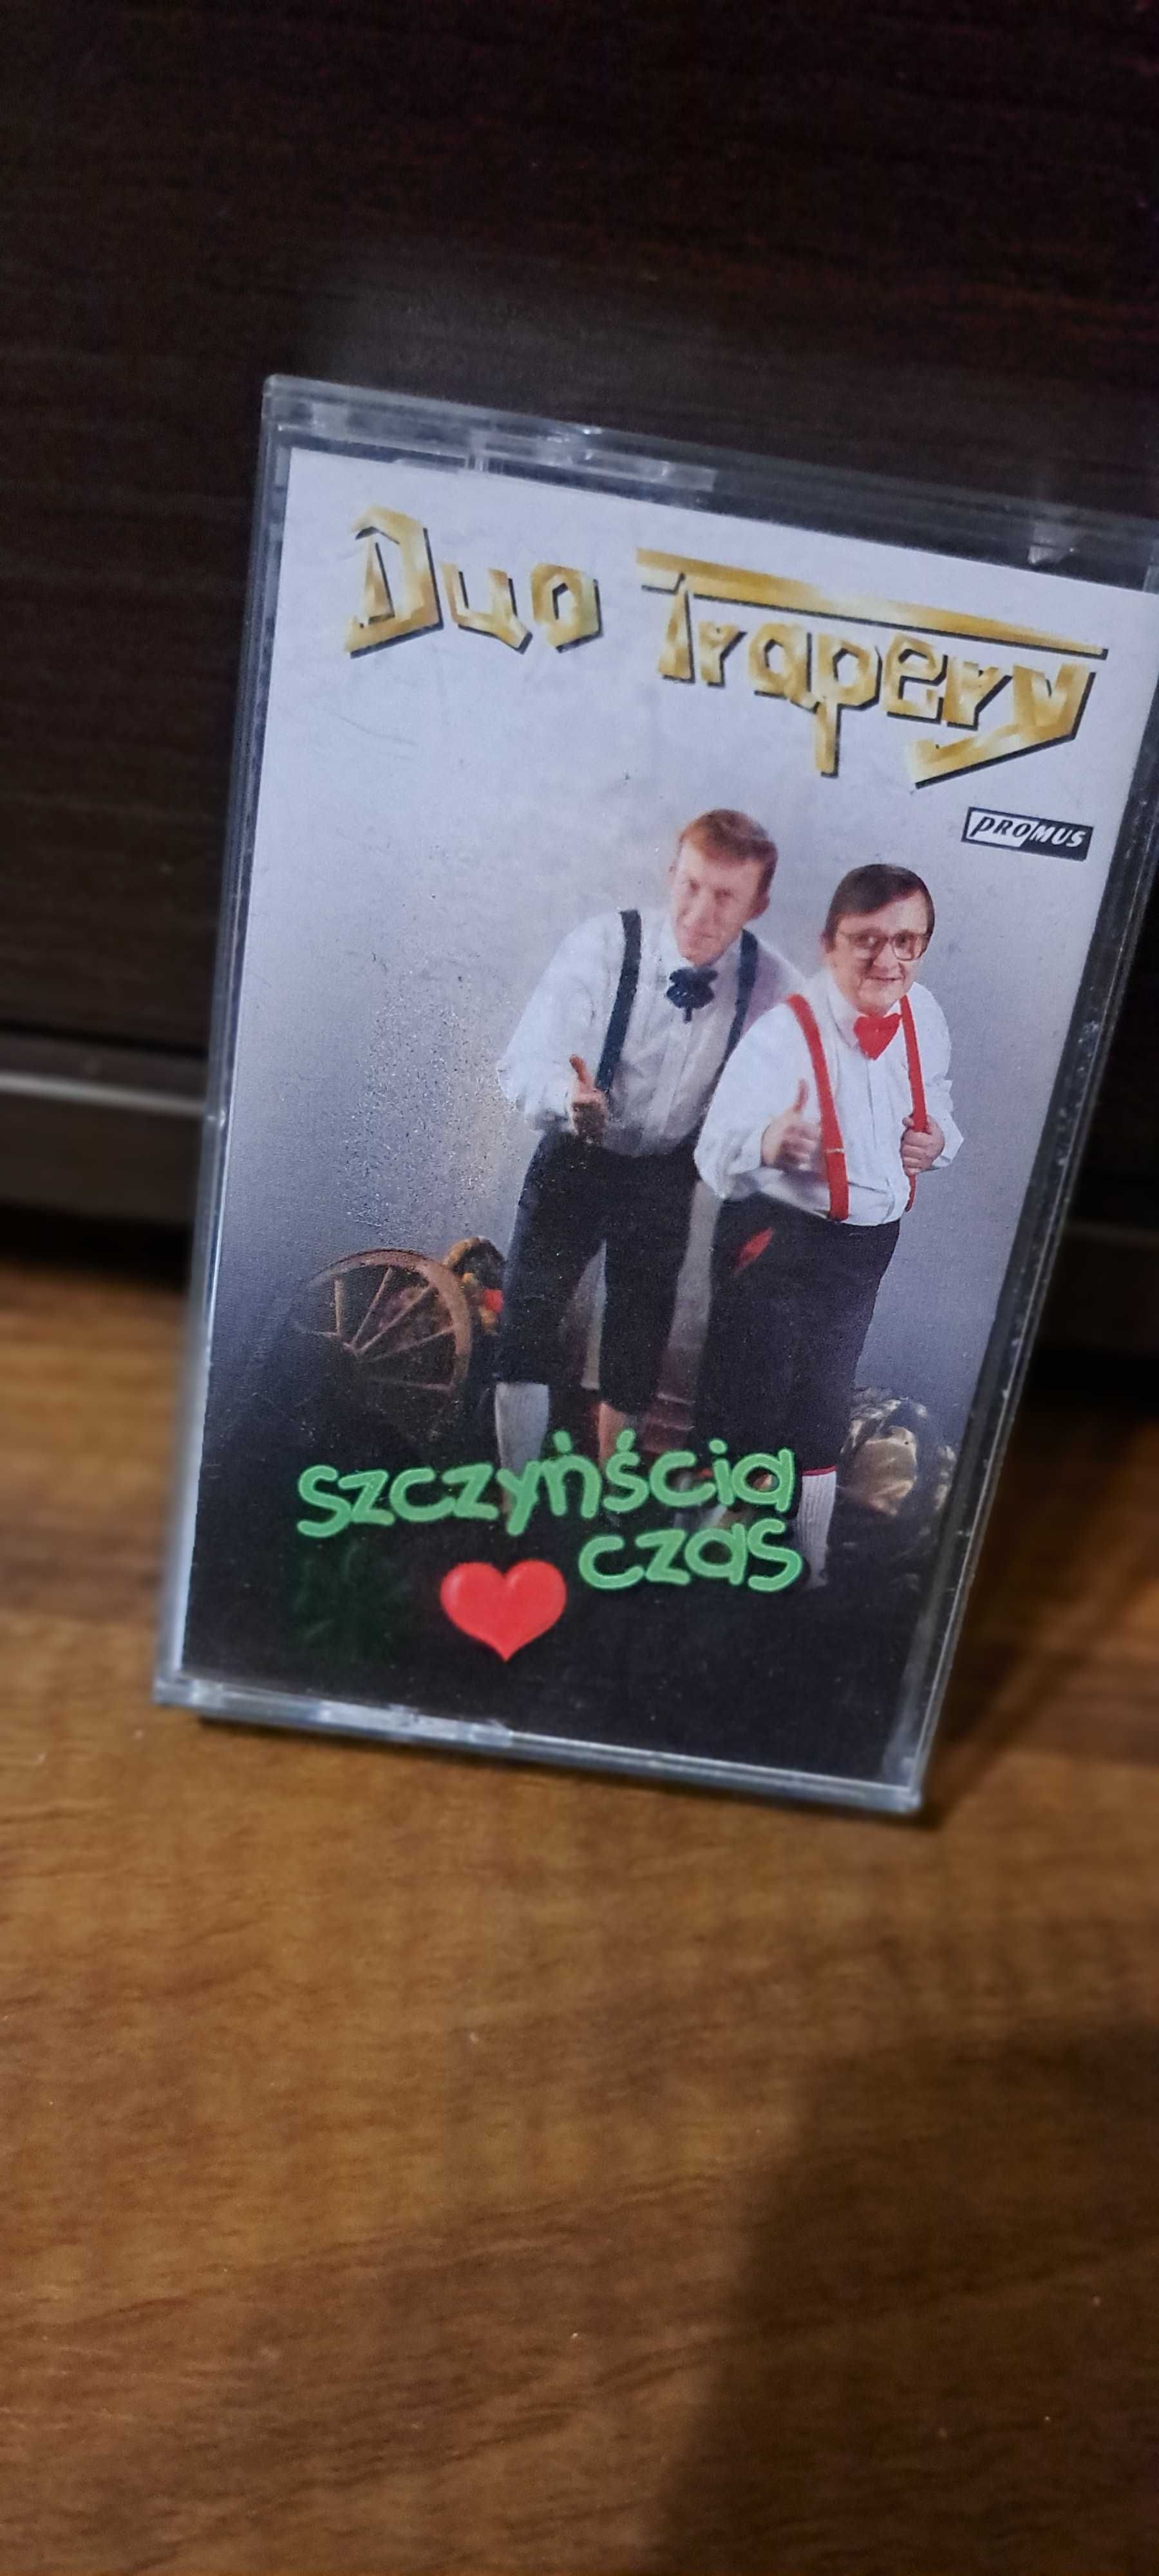 Duo TRapery Szczyńścia czas kaseta audio